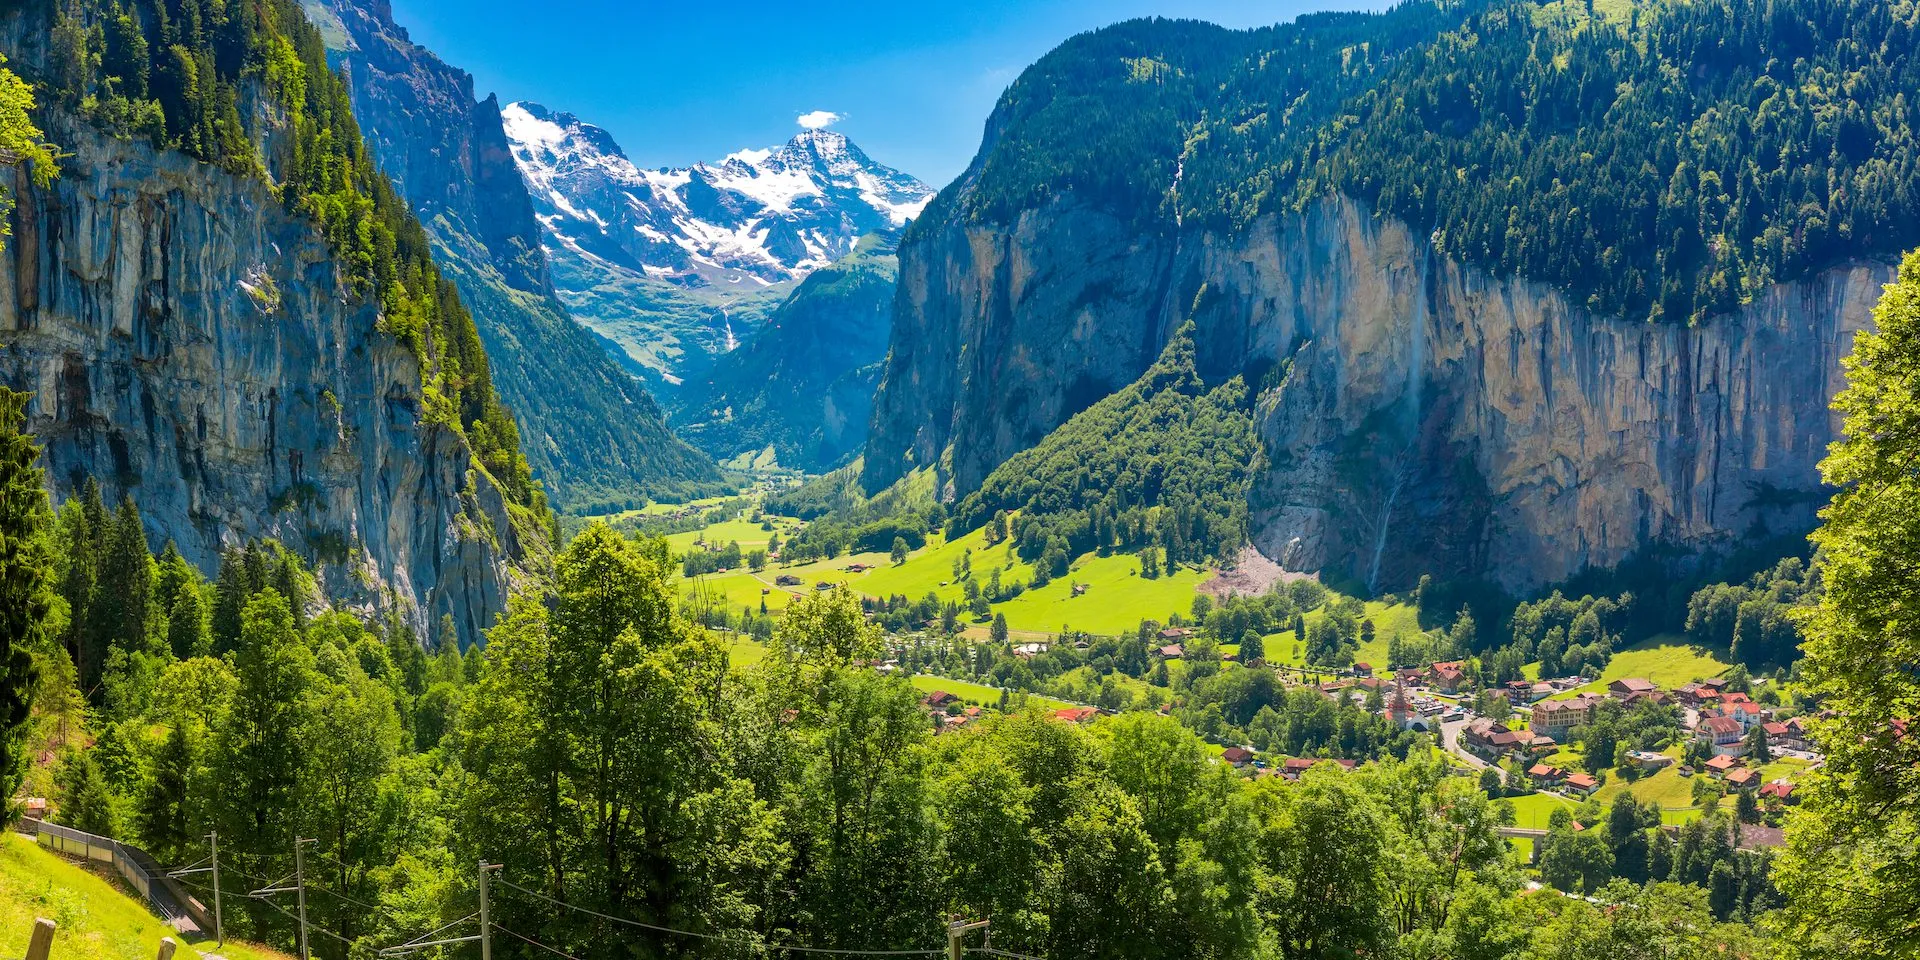 La vista del valle de Lauterbrunnen y sus impresionantes acantilados